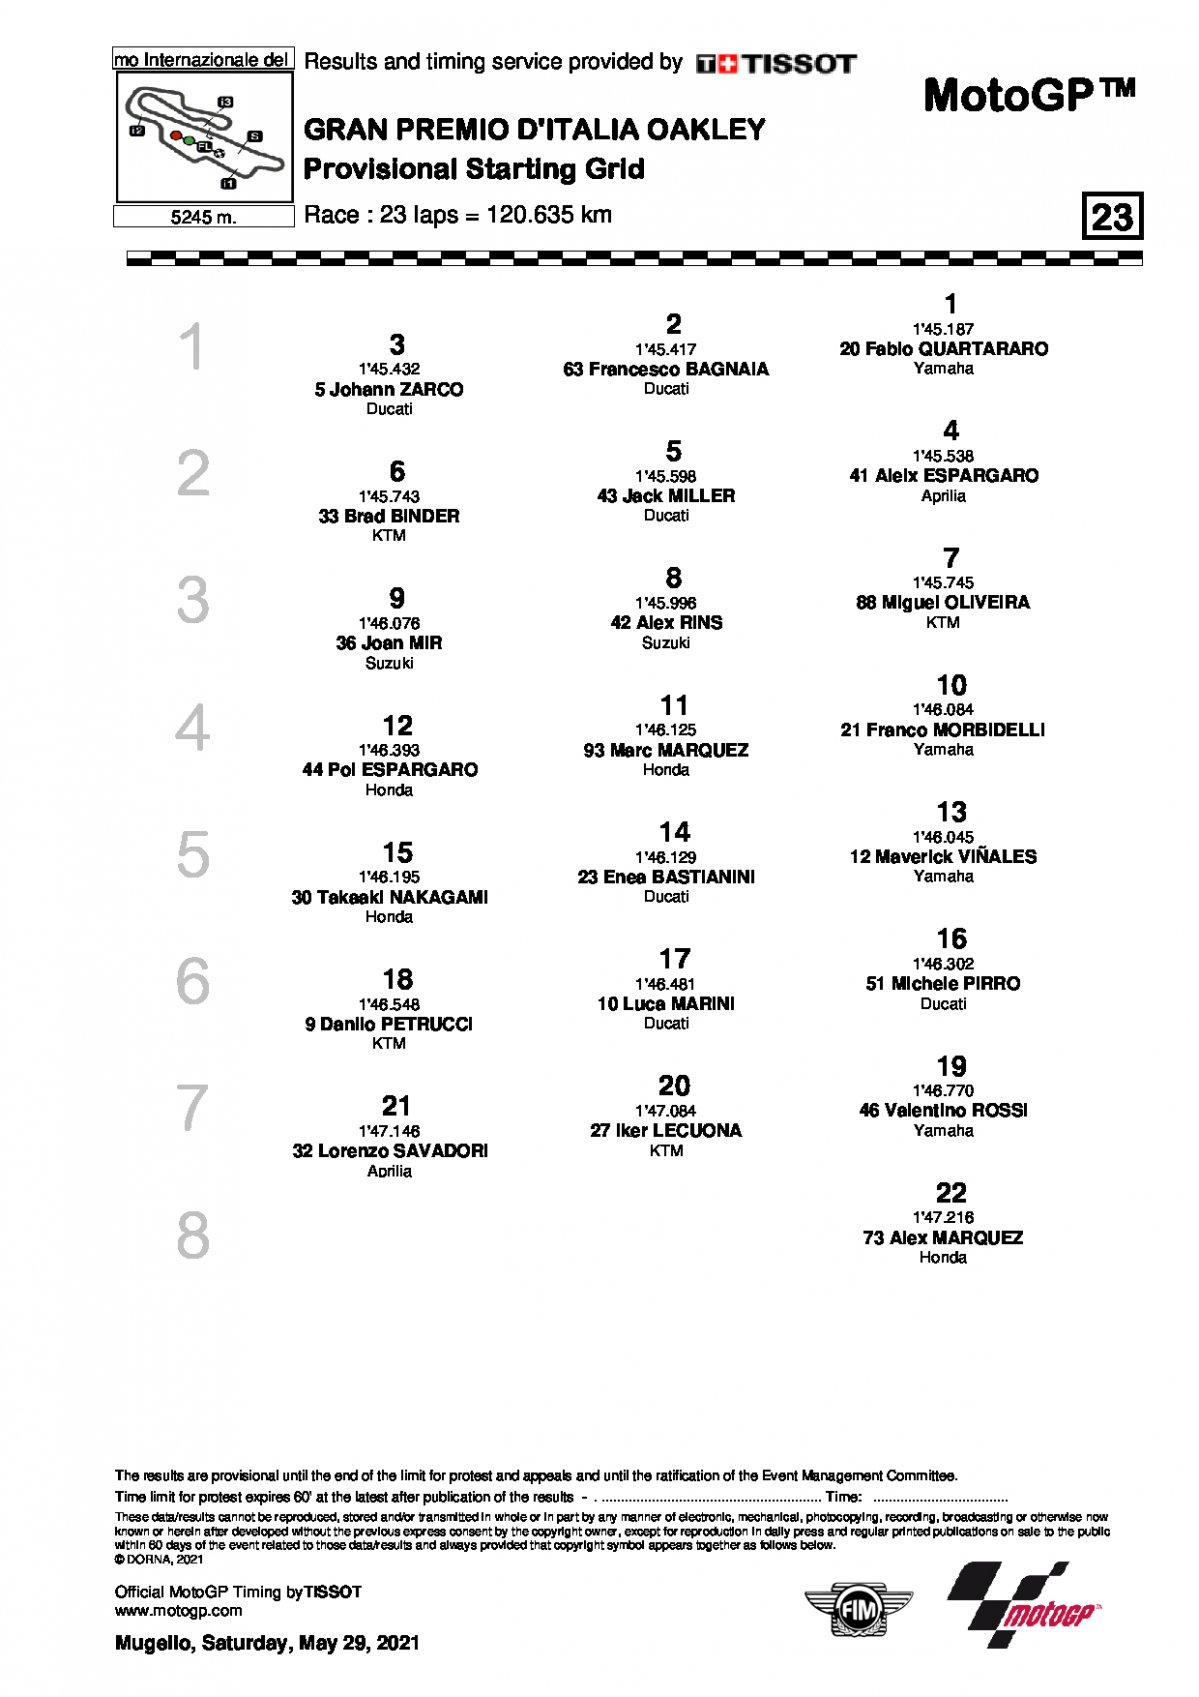 Стартовая решетка Гран-При Италии, MotoGP (30/05/2021)